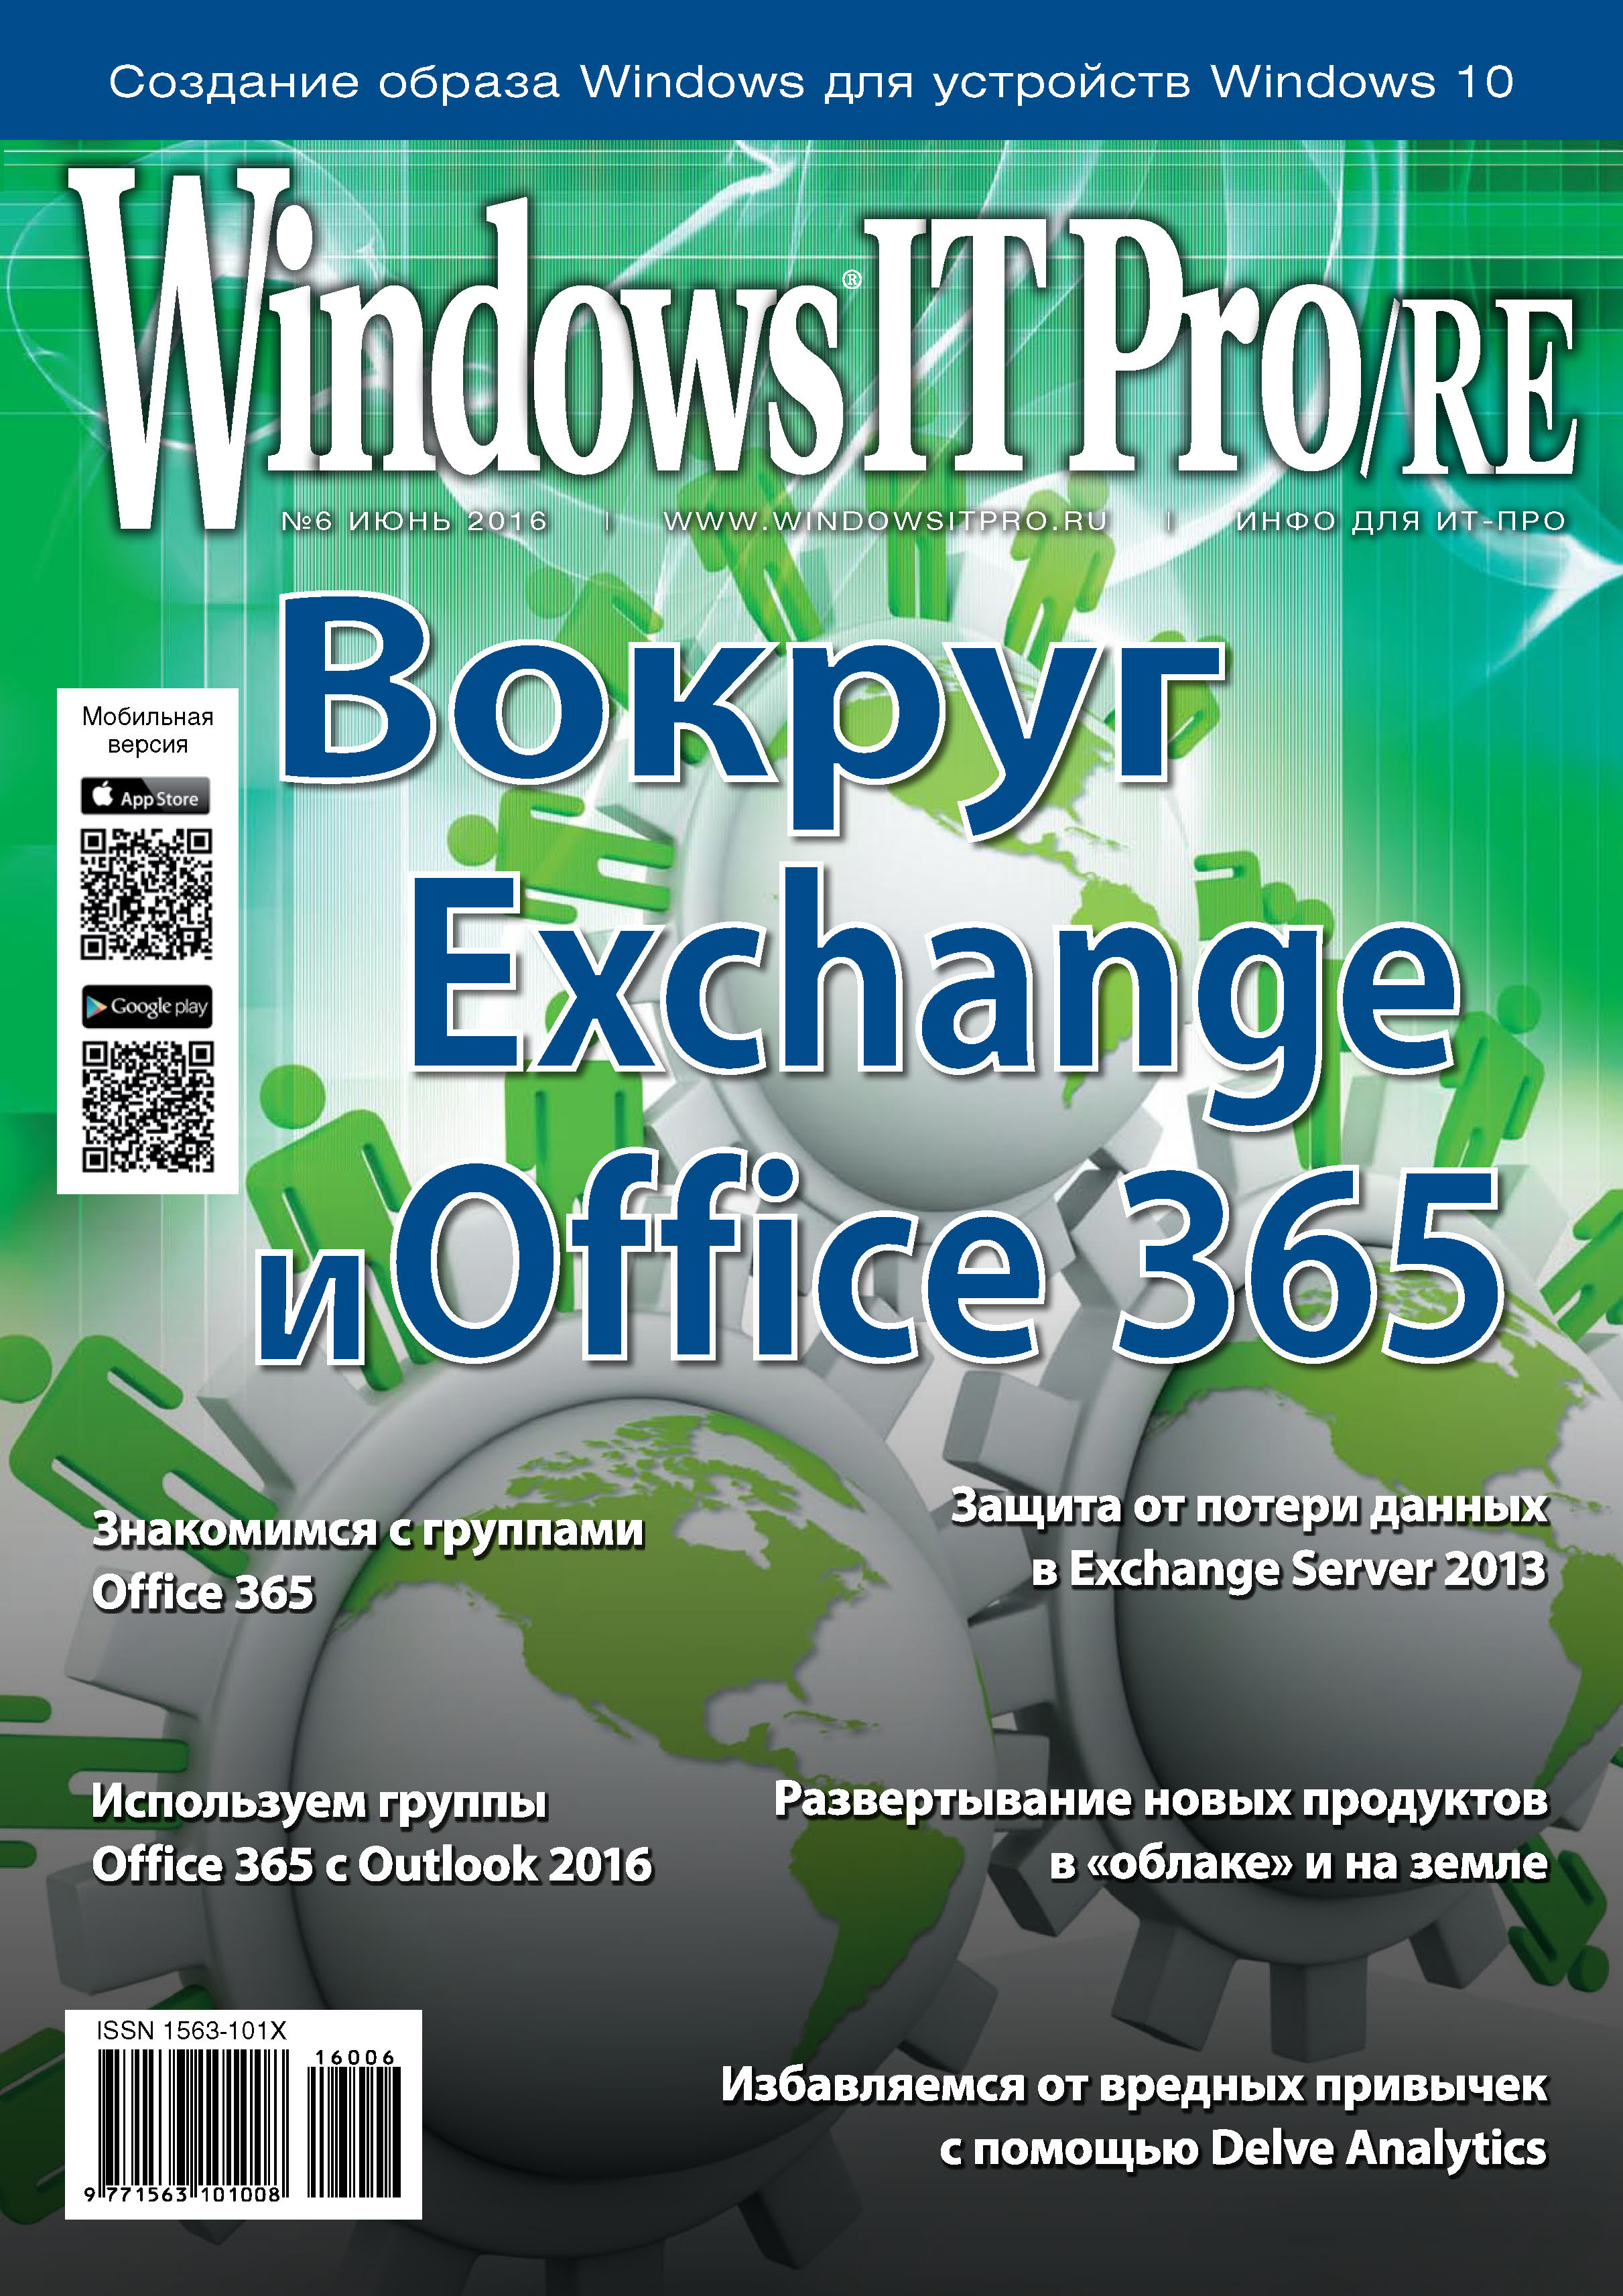 Книга Windows IT Pro 2016 Windows IT Pro/RE №06/2016 созданная Открытые системы может относится к жанру компьютерные журналы, ОС и сети, программы. Стоимость электронной книги Windows IT Pro/RE №06/2016 с идентификатором 18960602 составляет 484.00 руб.